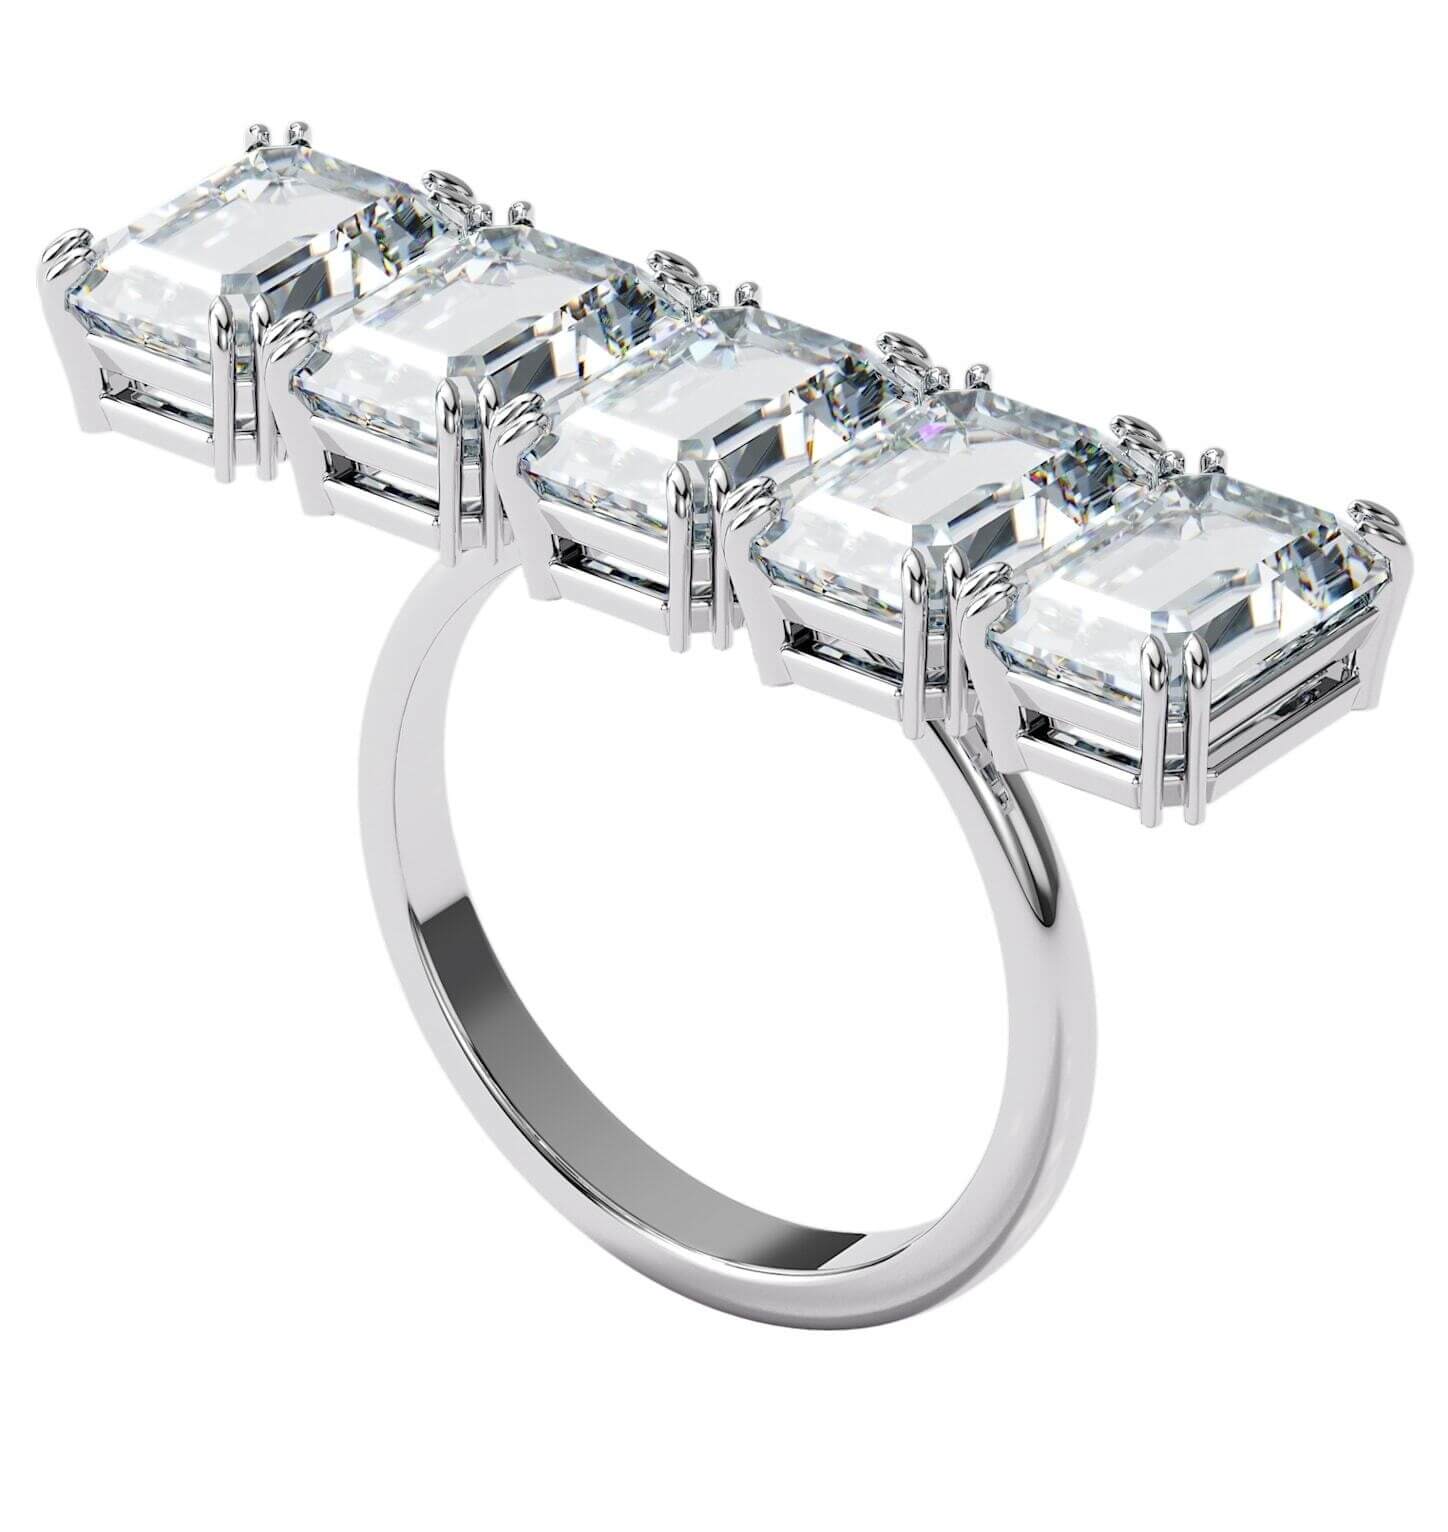 Swarovski Masívny trblietavý prsteň s kryštálmi Millenia 5610730 55 mm